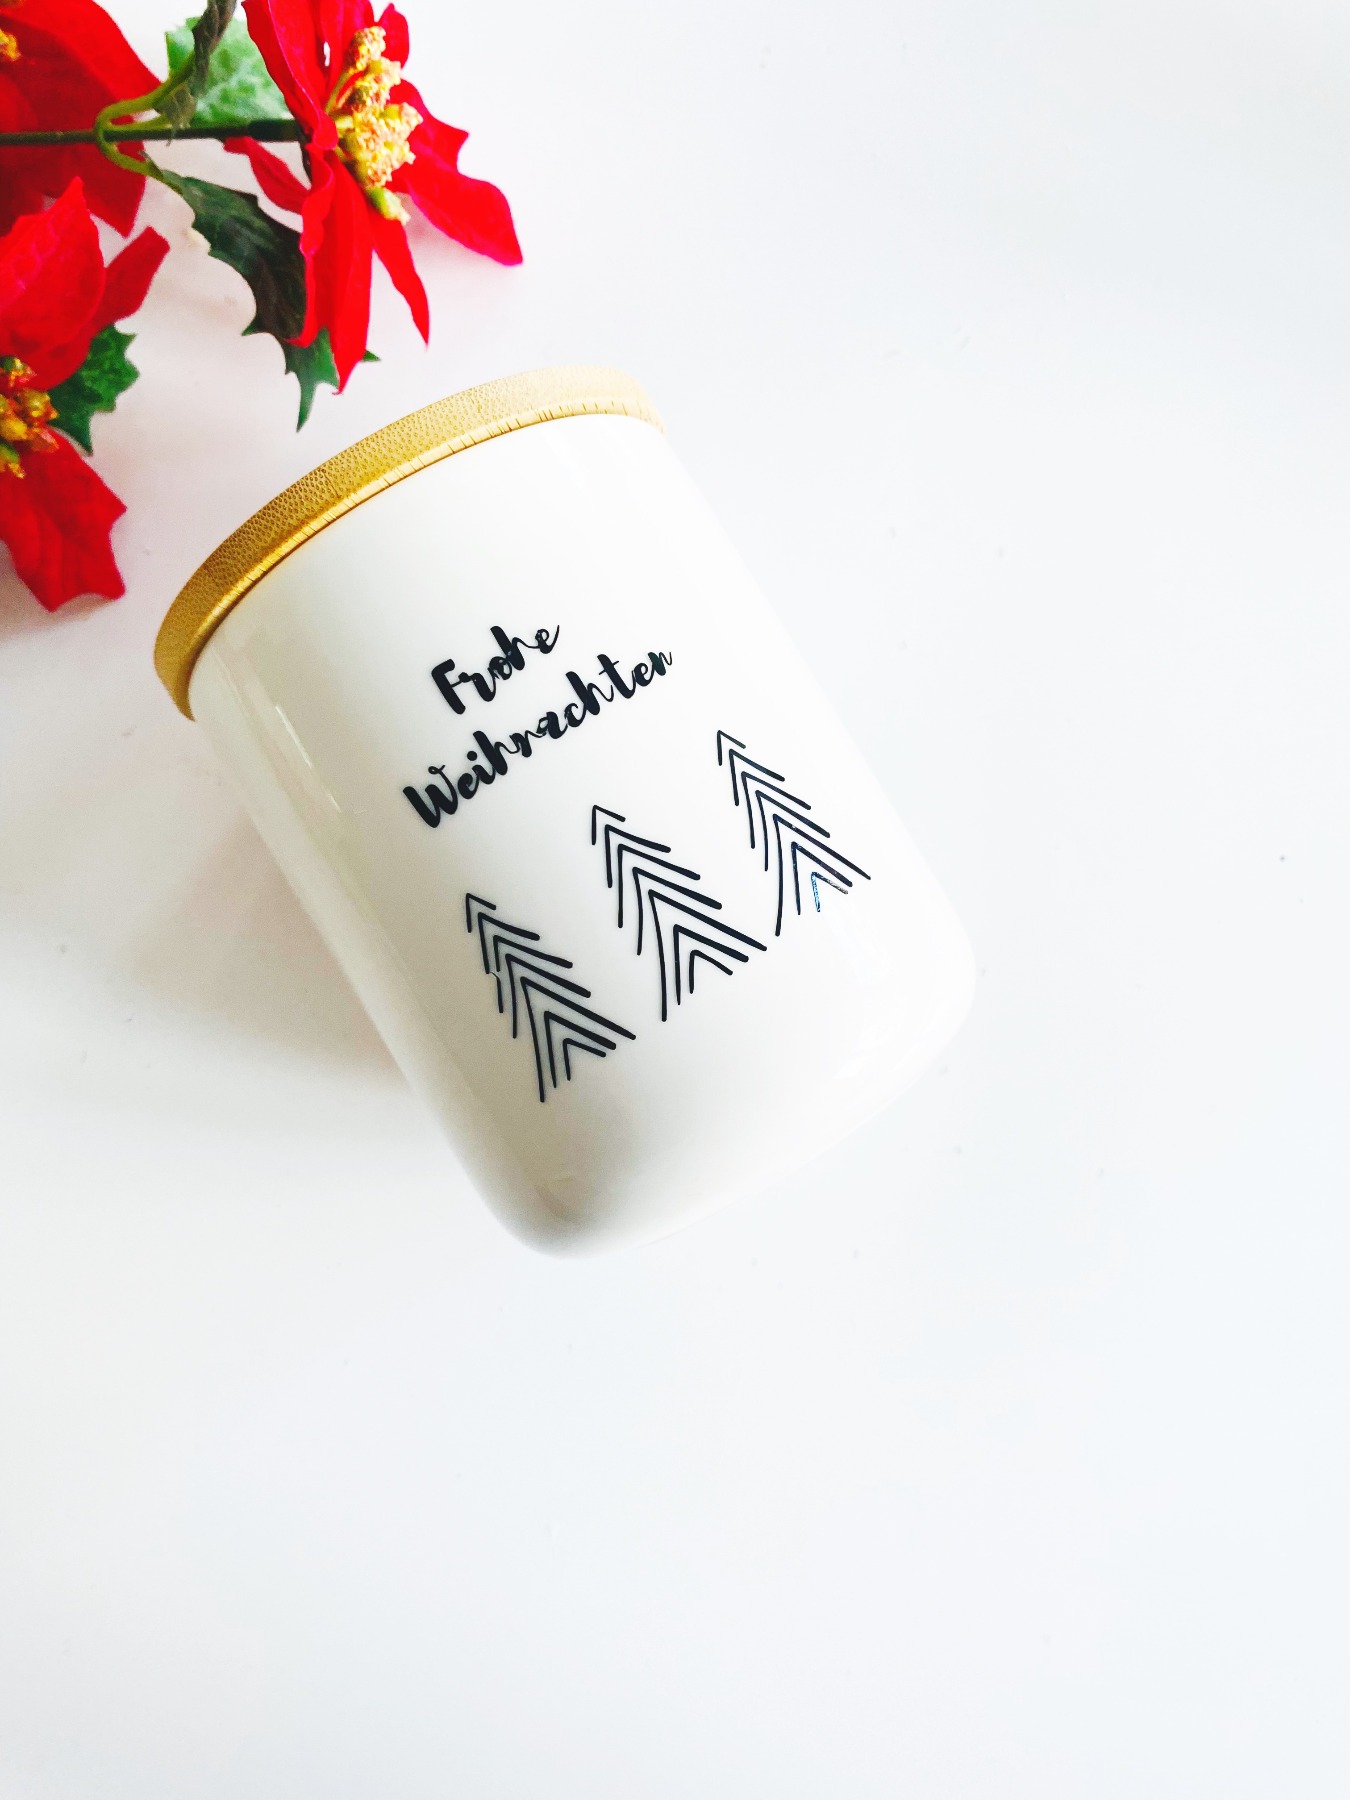 Keksdose Frohe Weihnachten Mit Liebe gebacken - Weihnachtsgeschenk Vorratsdose Keramik weiß